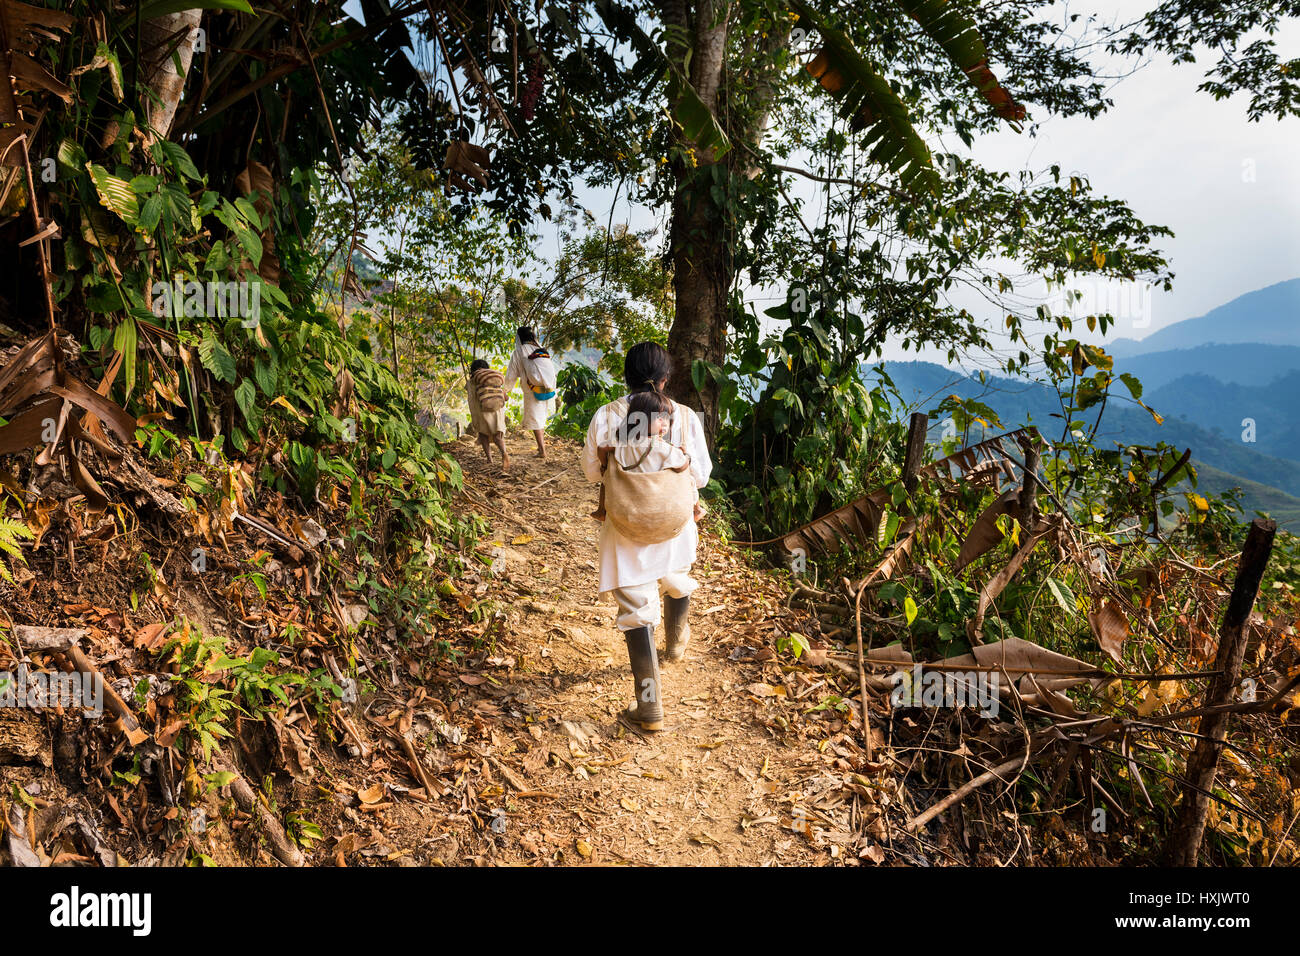 Sierra Nevada de Santa Marta, Kolumbien - 8. März 2014: Kogi Familie gehen in eine Spur im Wald in der Sierra Nevada de Santa Marta, Kolumbien Stockfoto